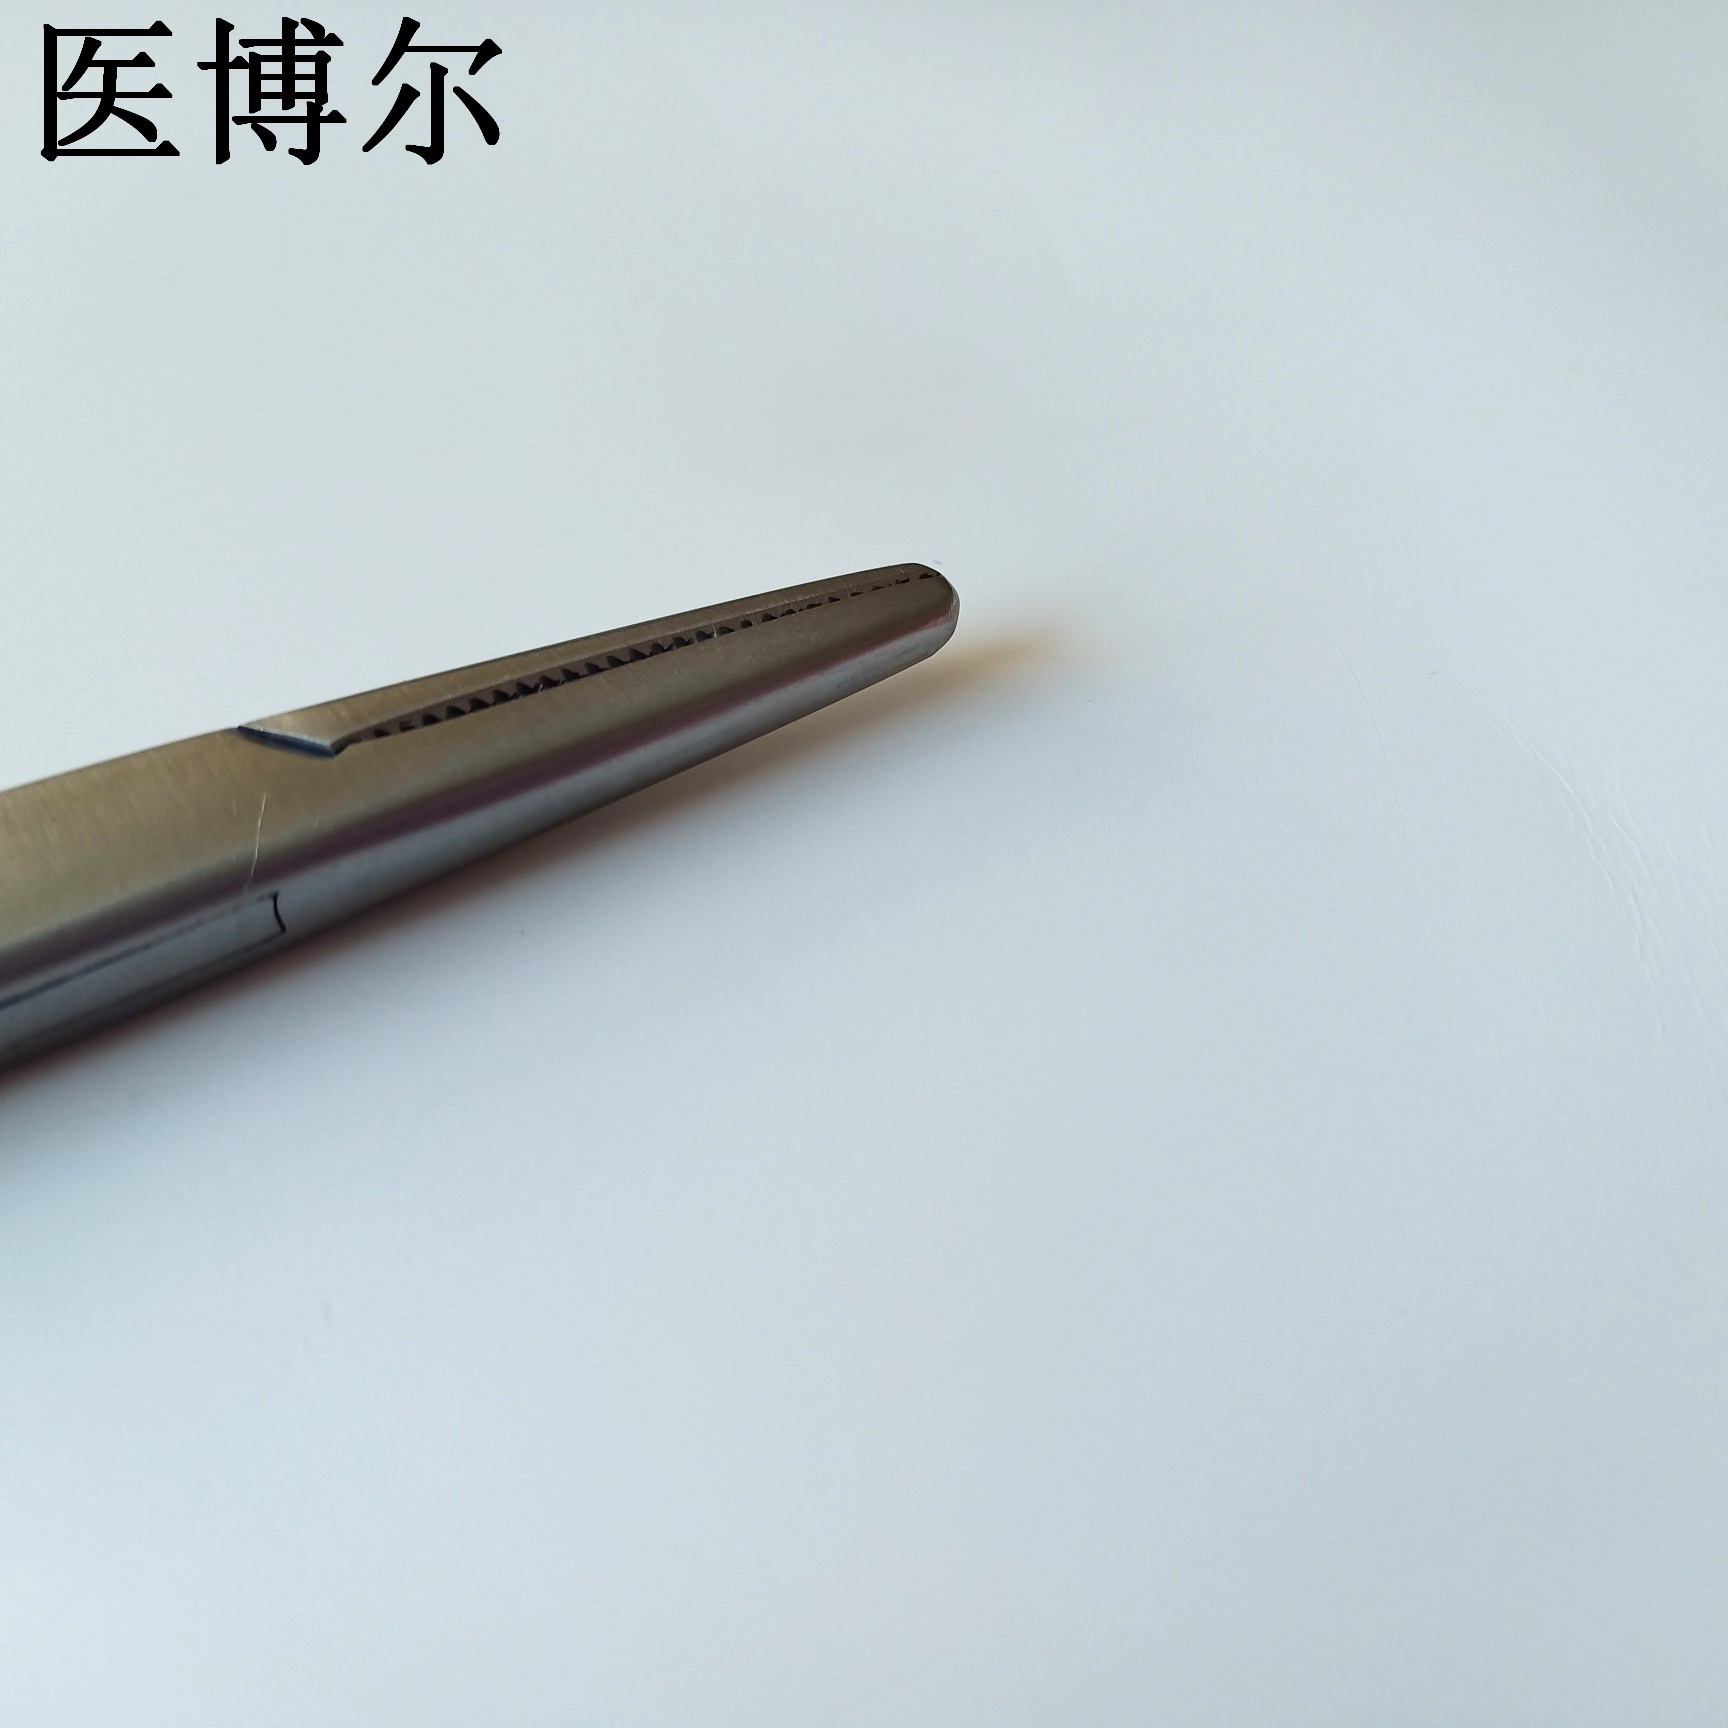 20cm粗针持针器 (4)_看图王.jpg